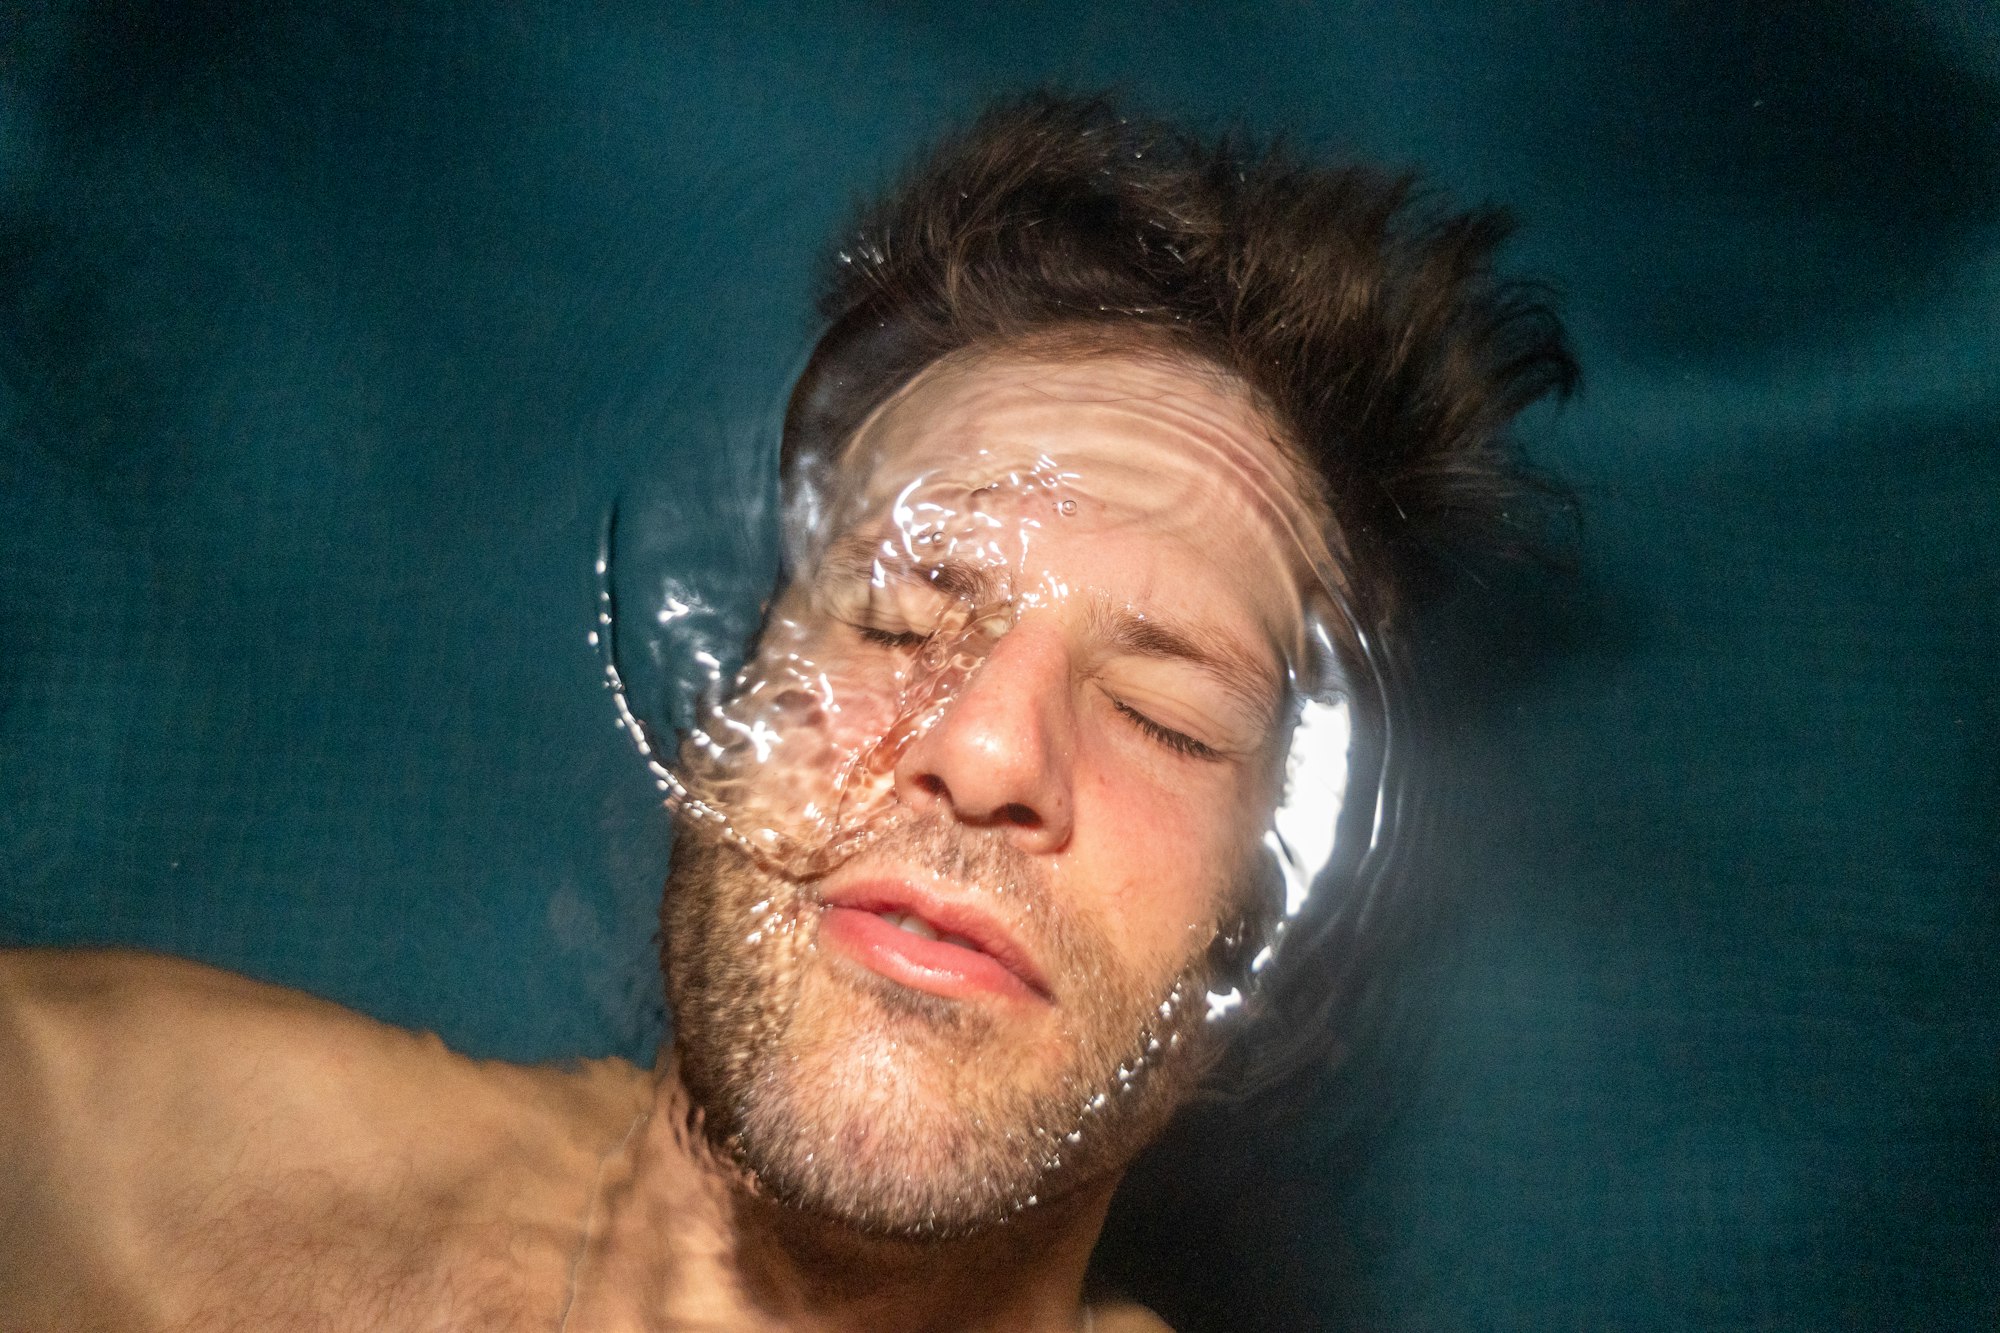 Shane Ohmer takes a night swim @shaneohmer on Instagram